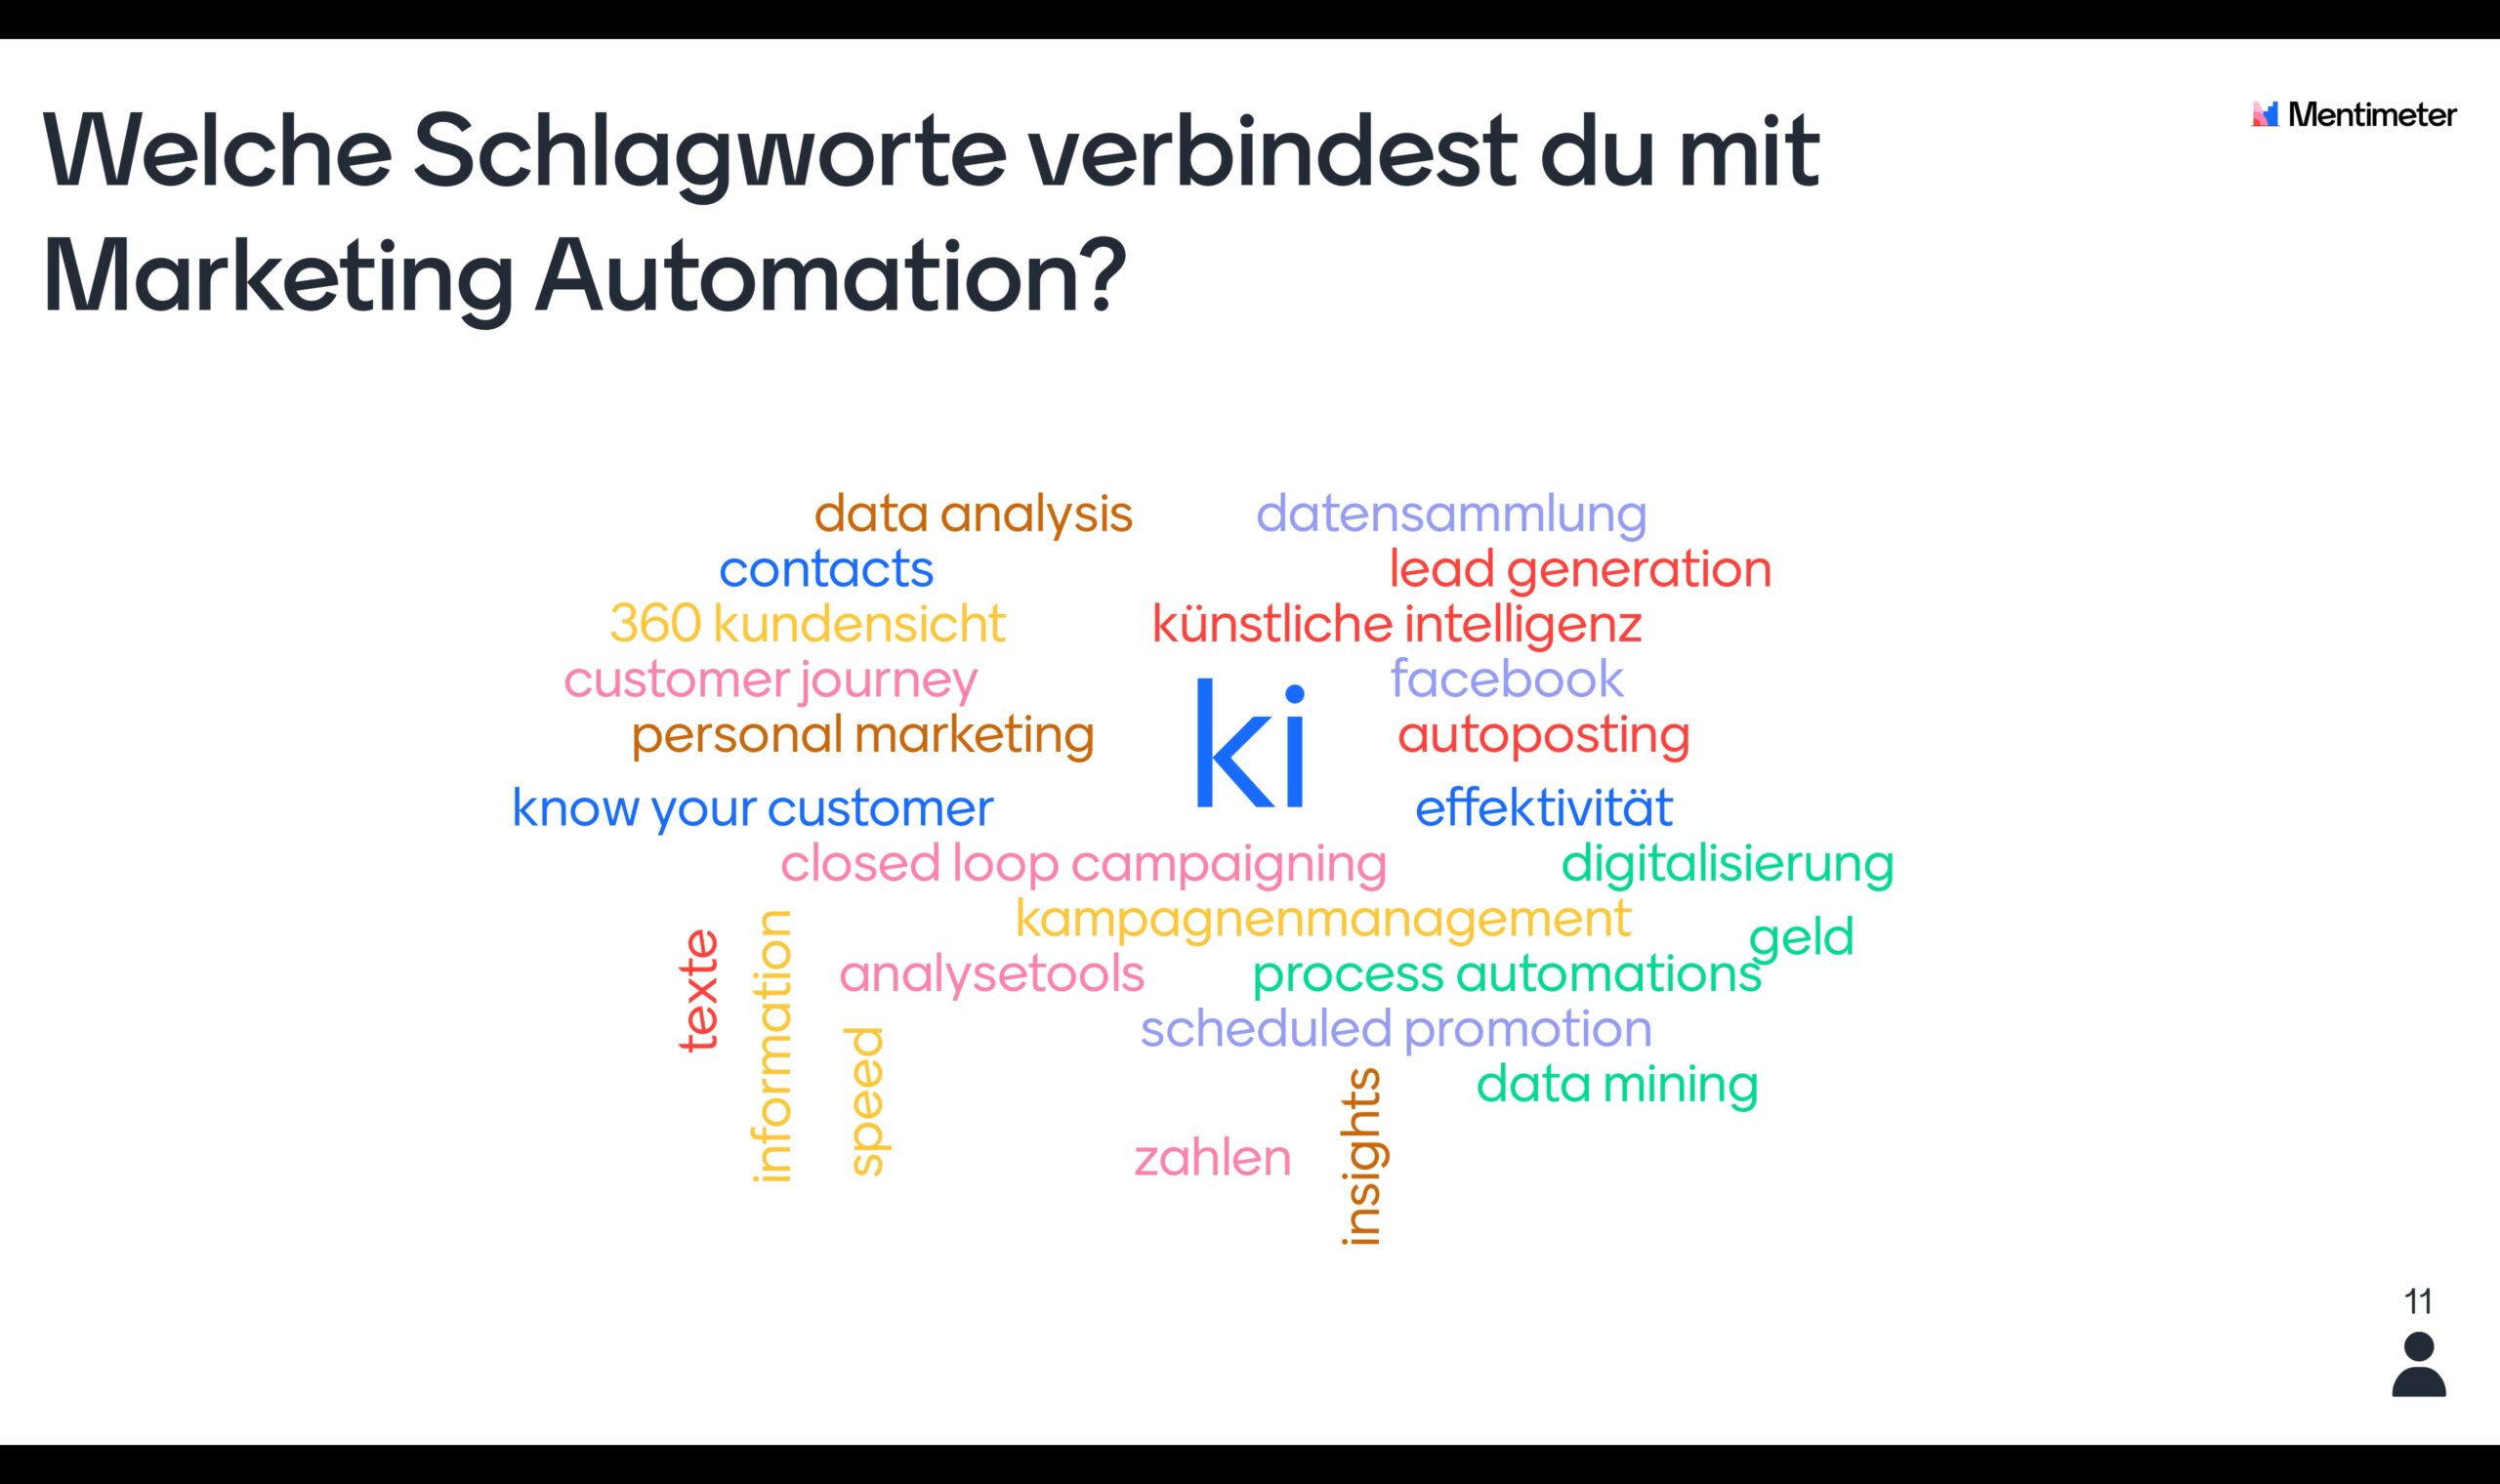 Welche Schlagworte verbindest du mit Marketing Automation?